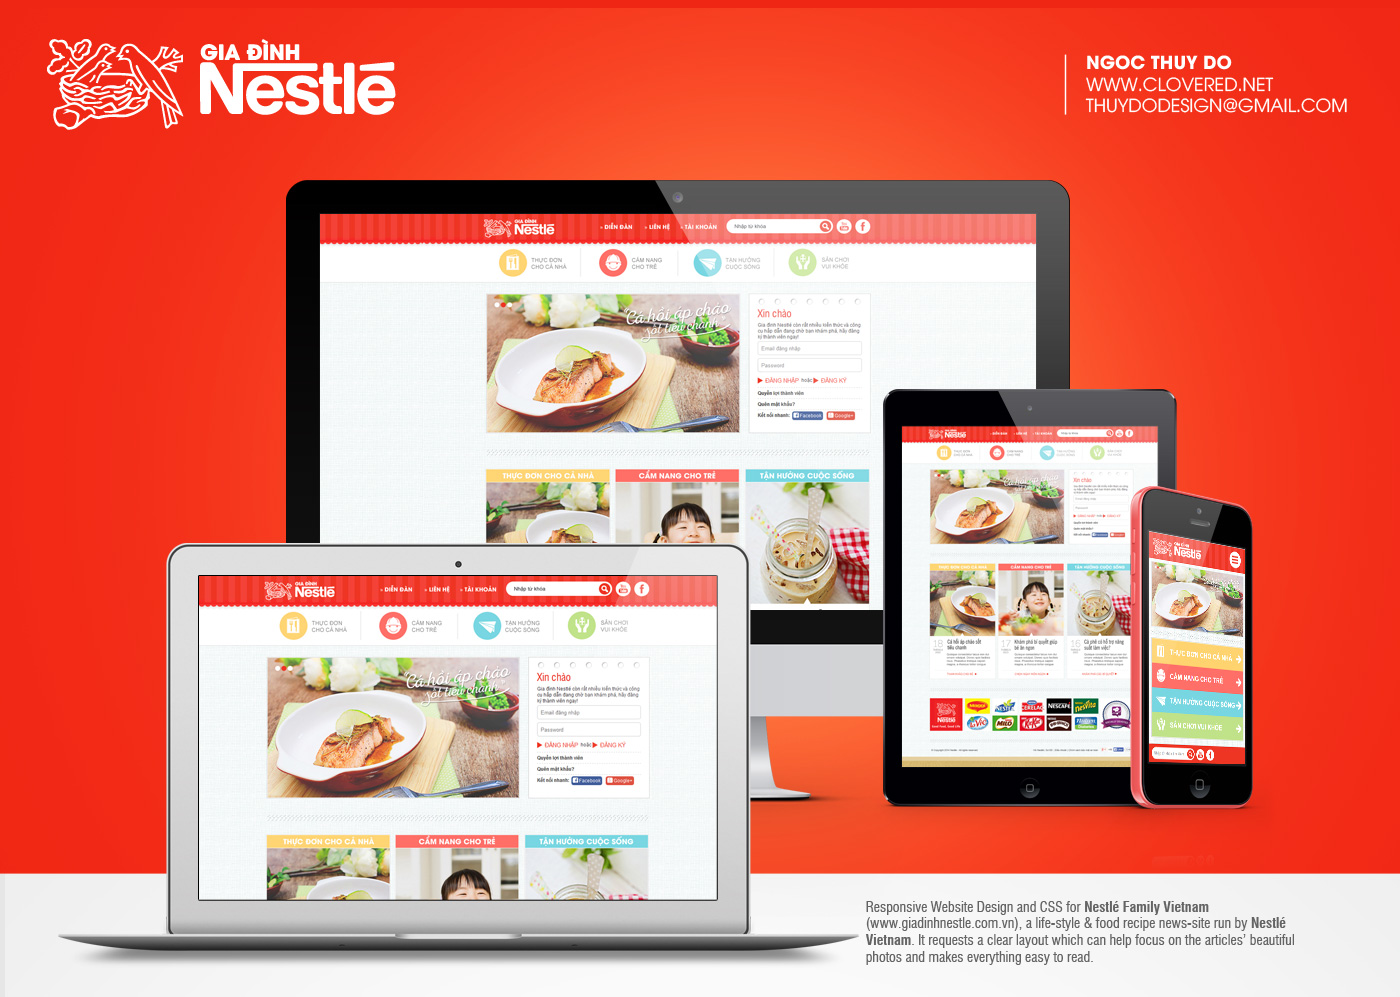 Nestlé Family Vietnam Website